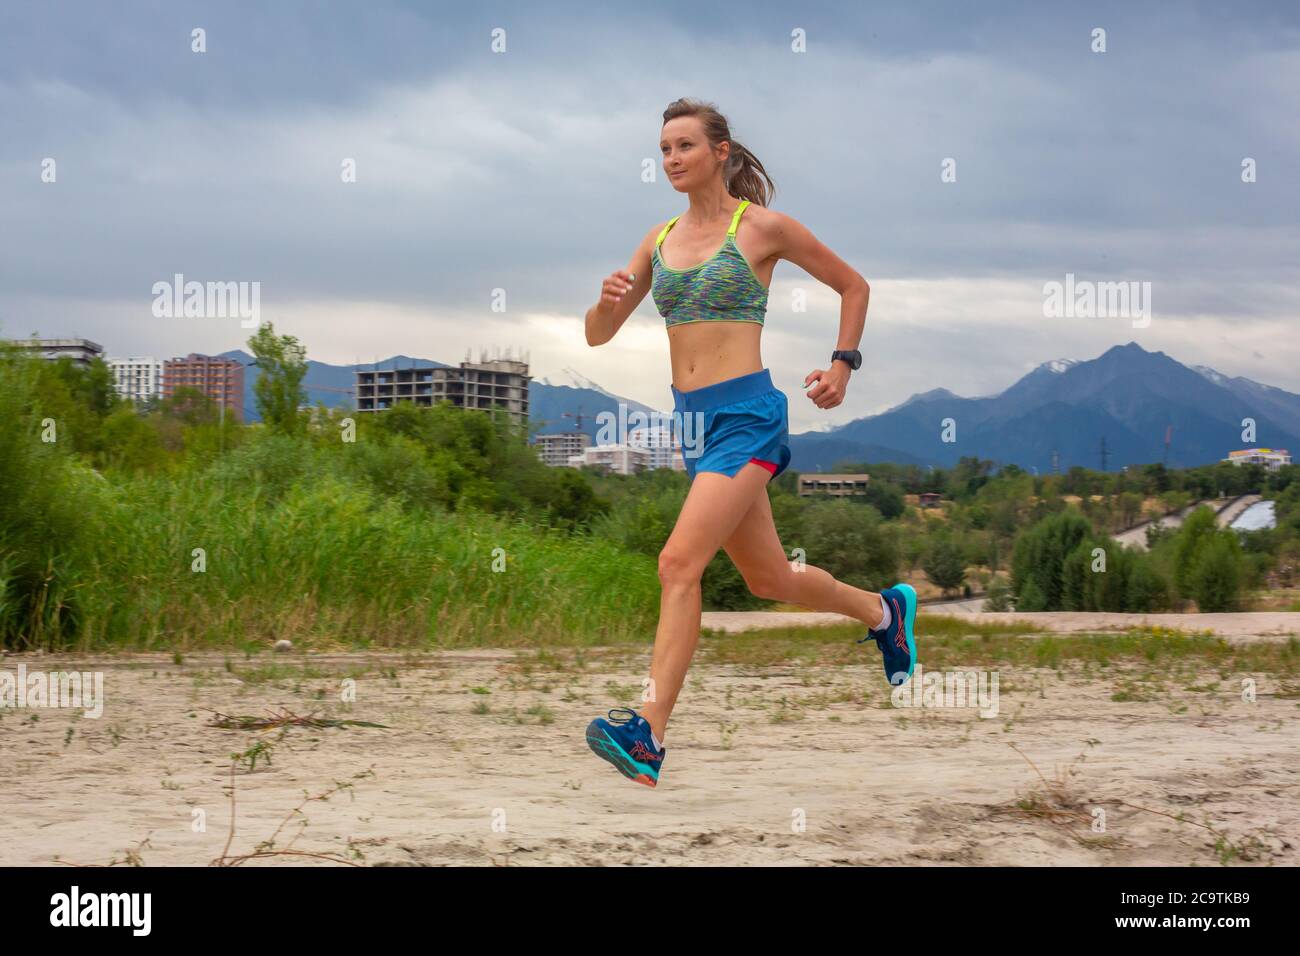 Laufen im Stadtpark. Frau Läuferin vor dem Joggen mit Montreal Skyline im Hintergrund Stockfoto